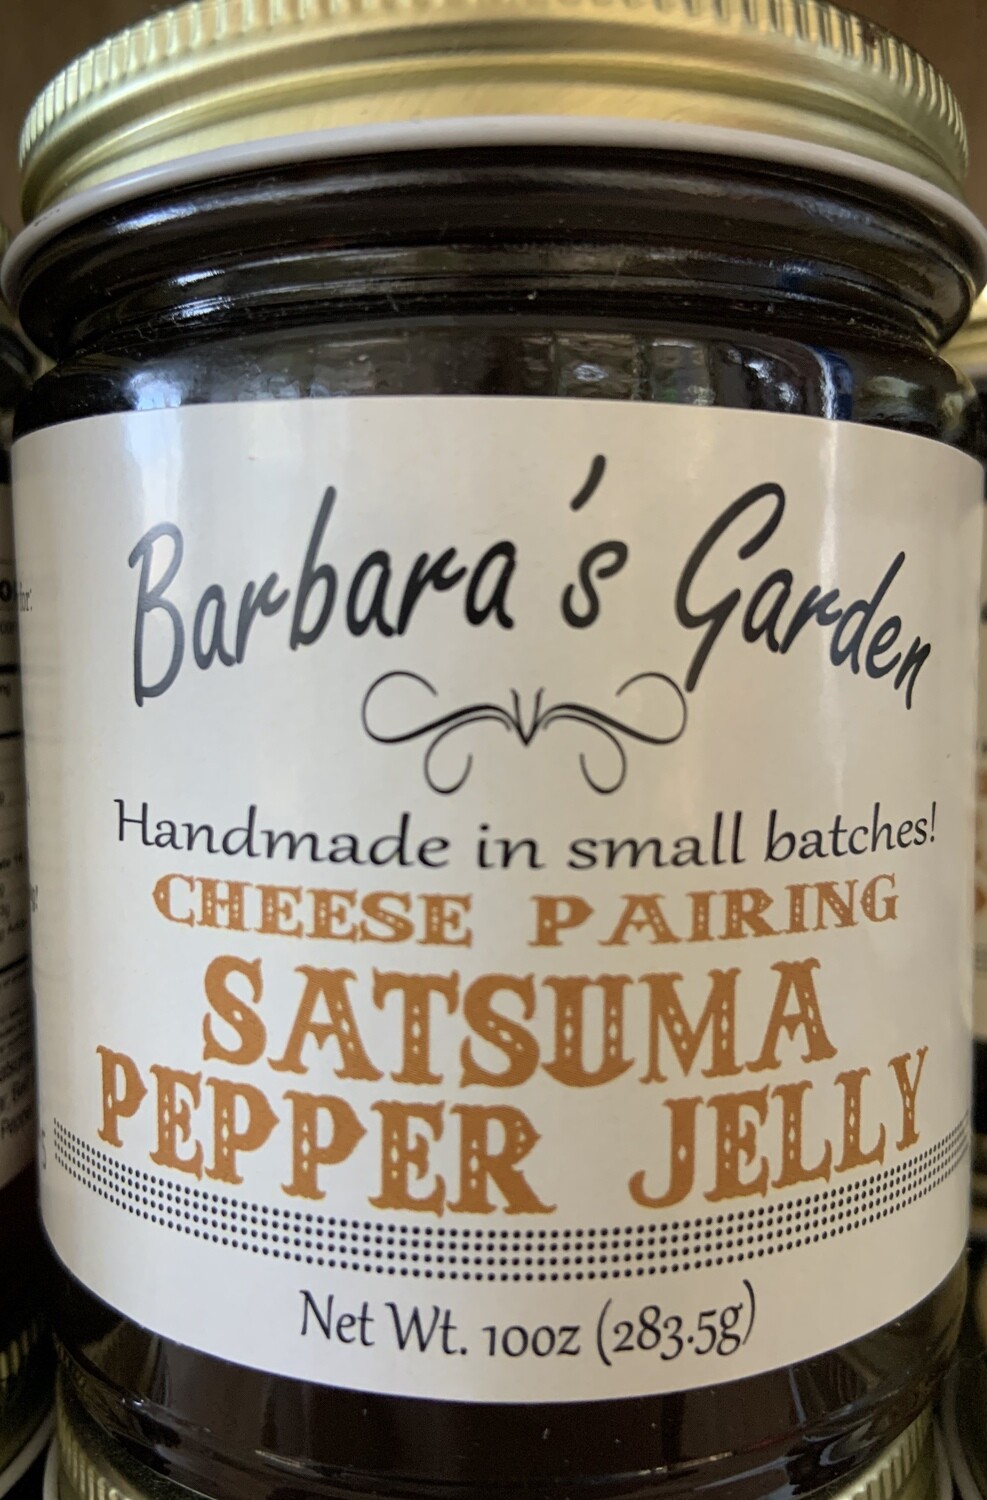 Barbara's Garden "Cheese Pairing" Satsuma Pepper Jelly 10 oz